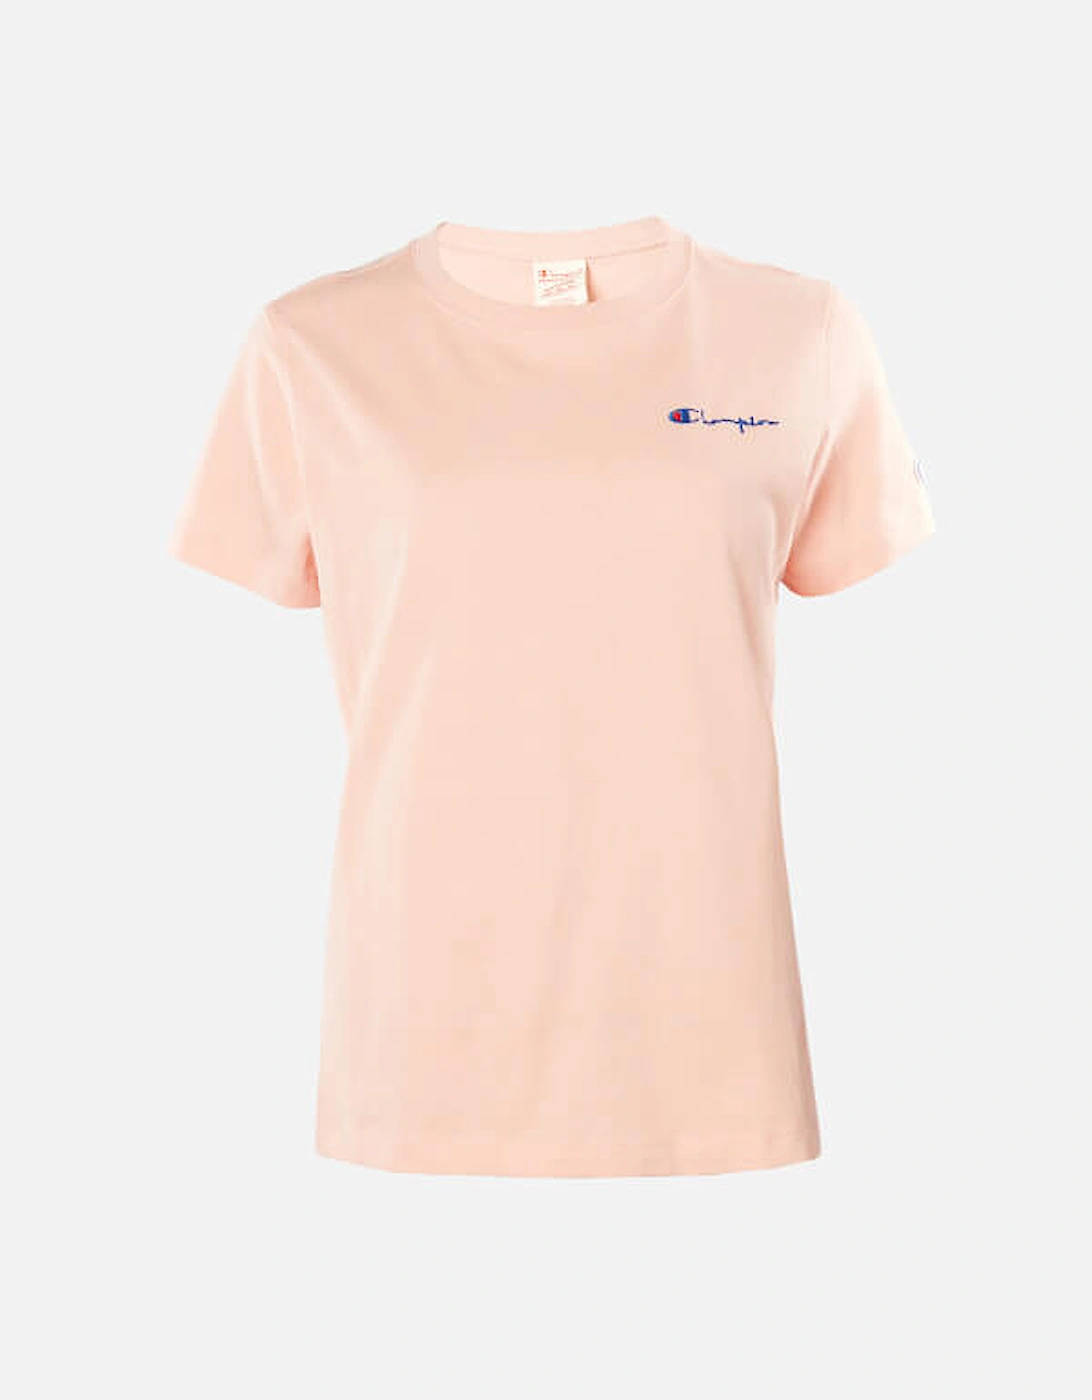 Women's Small Script T-Shirt - Pink - - Home - Women's Small Script T-Shirt - Pink, 3 of 2